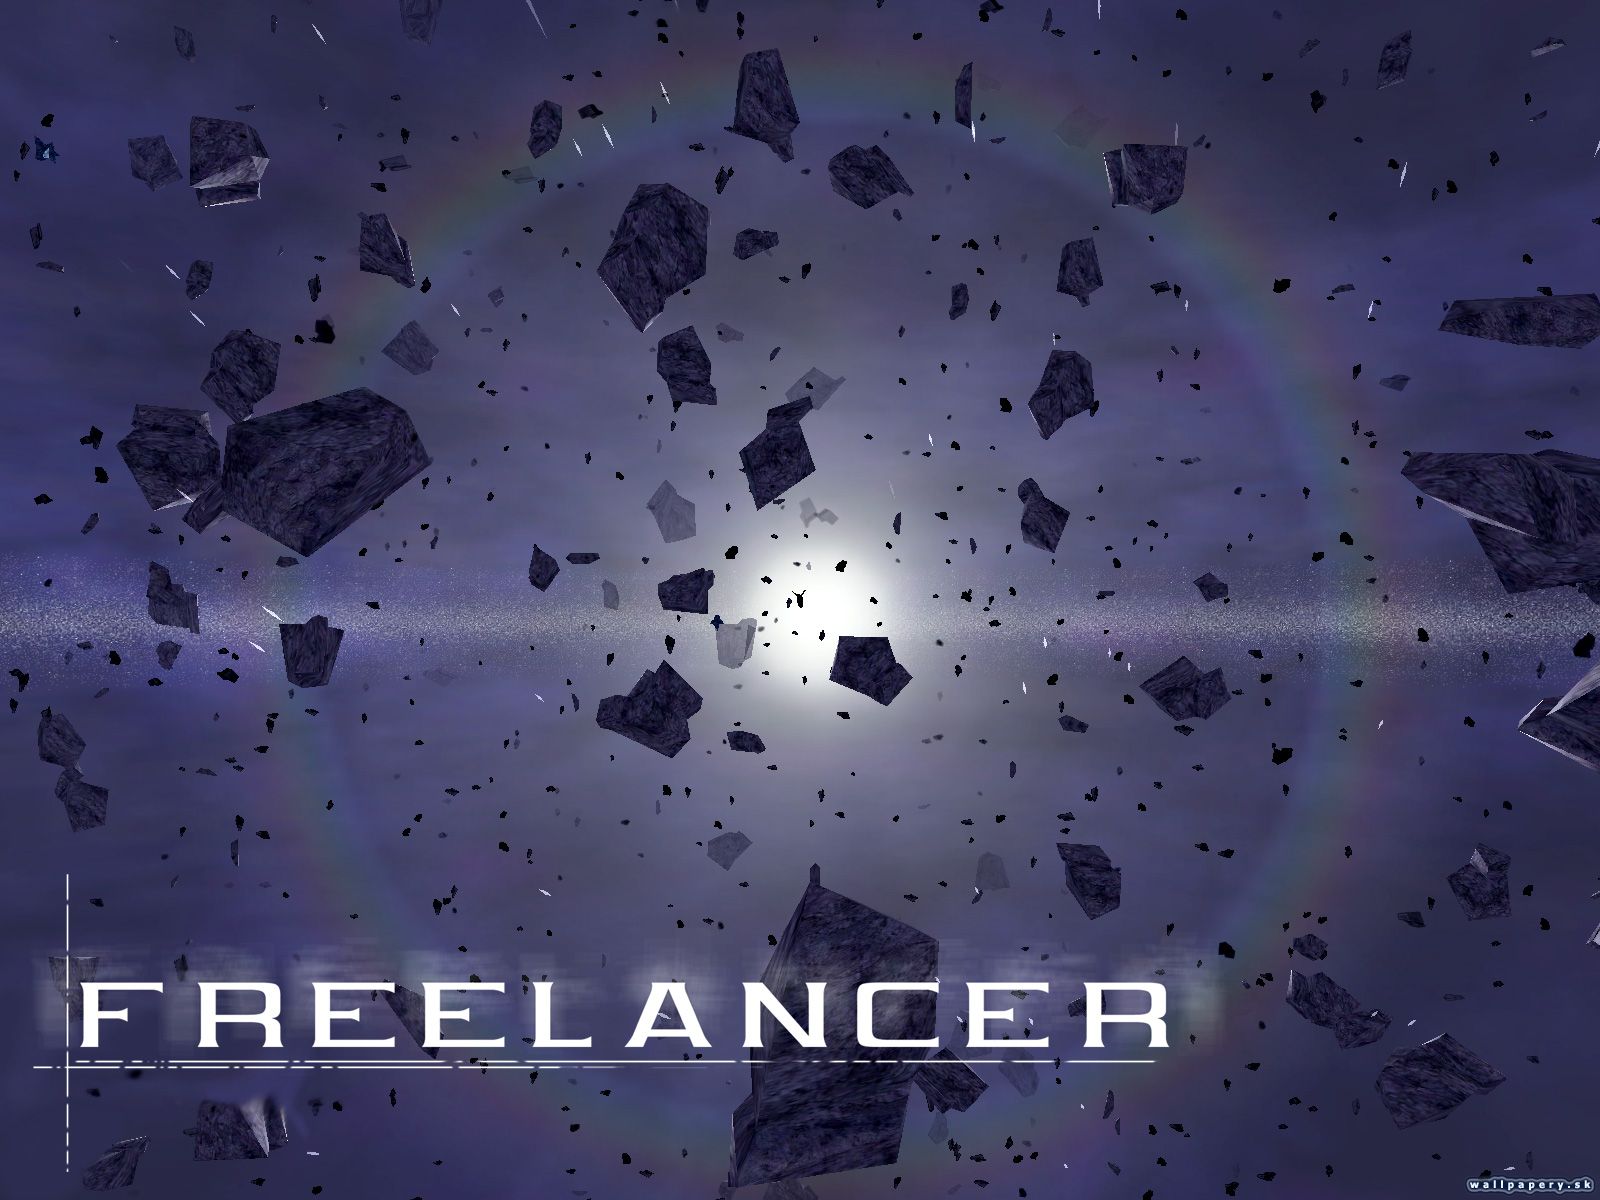 Freelancer - wallpaper 5